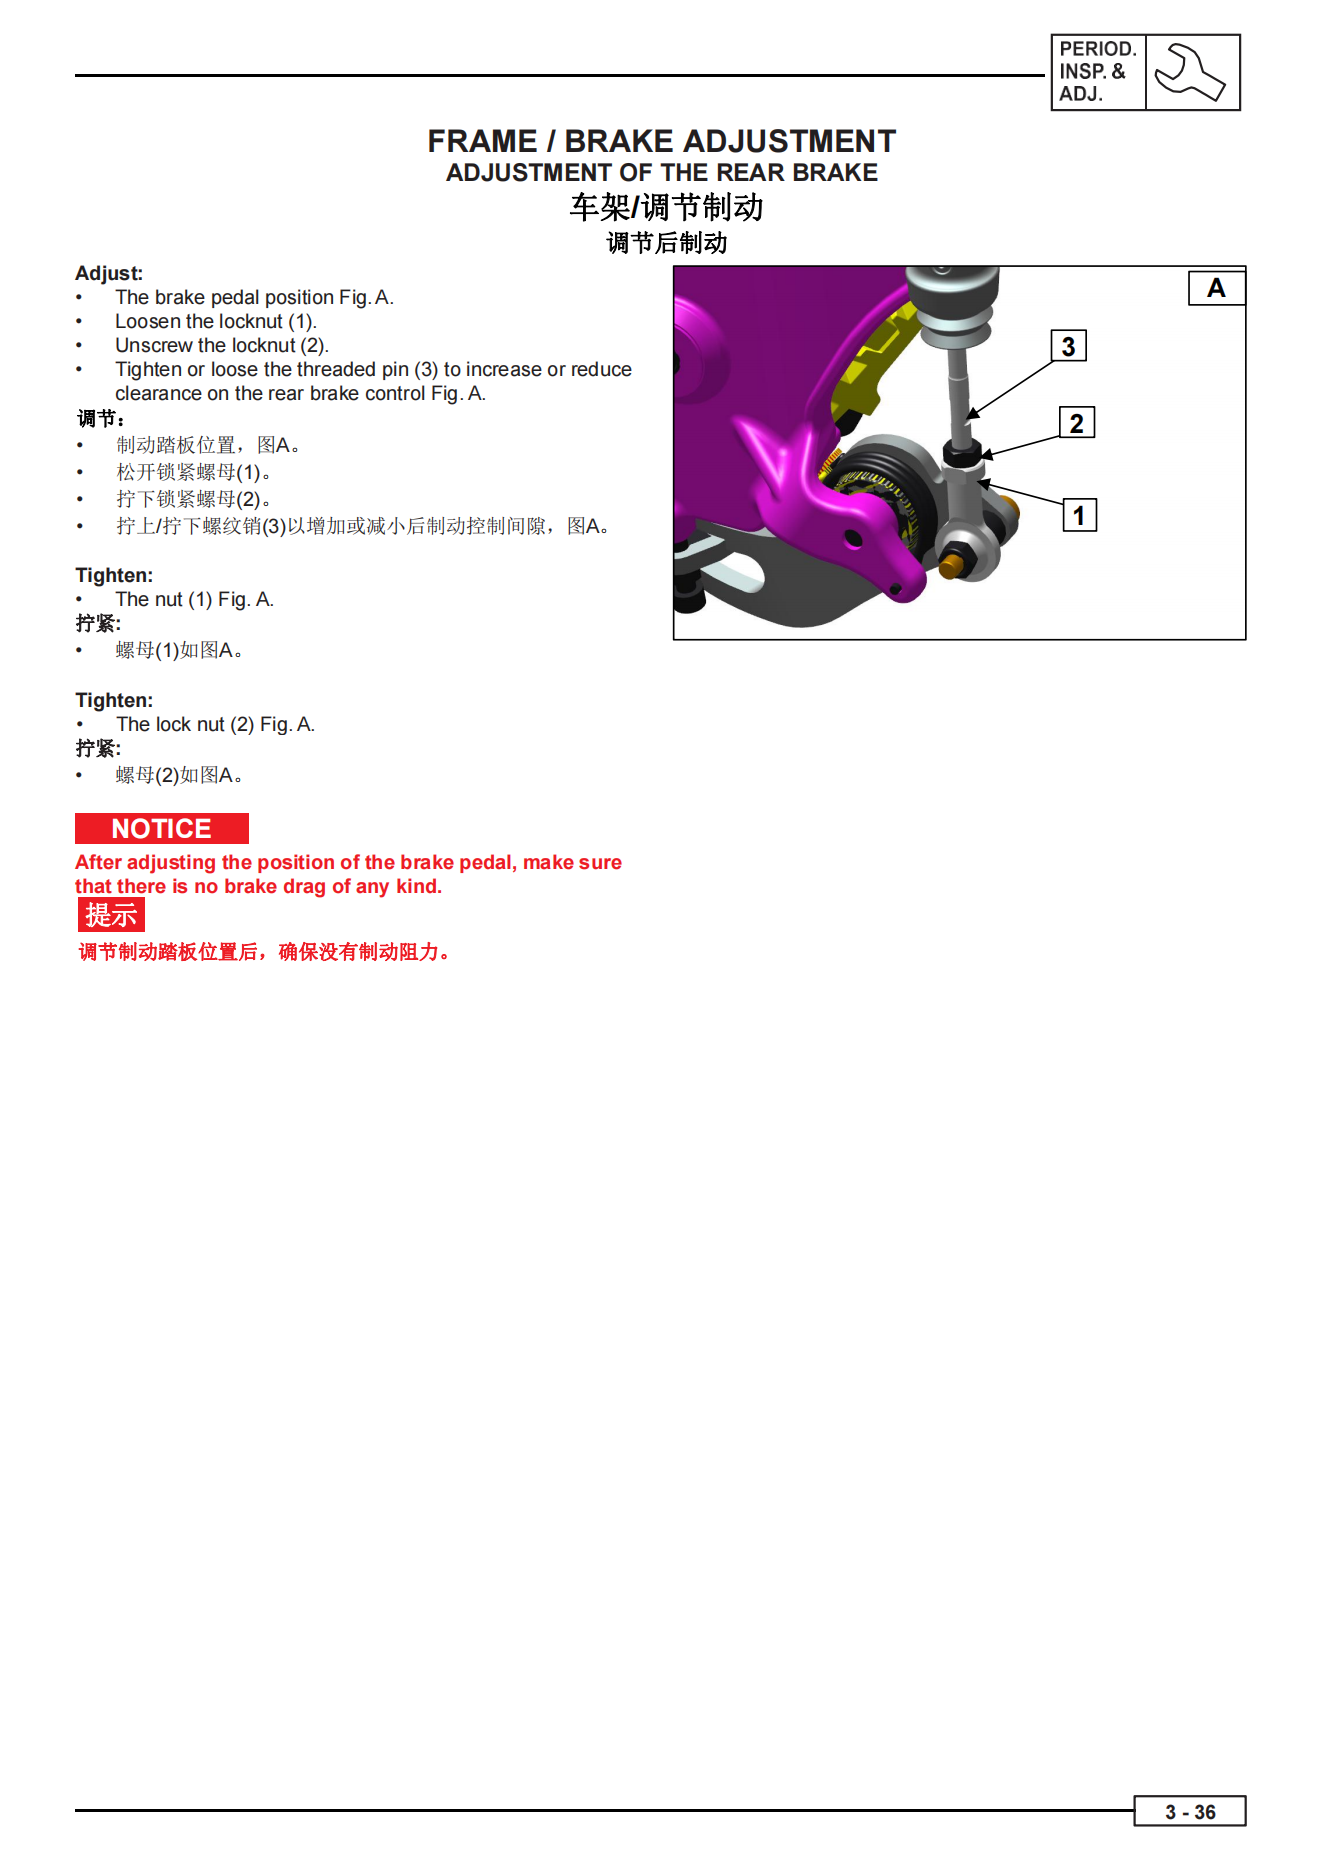 中英双语贝纳利幼狮800圆灯版BJ750-6Leoncino800维修手册插图3